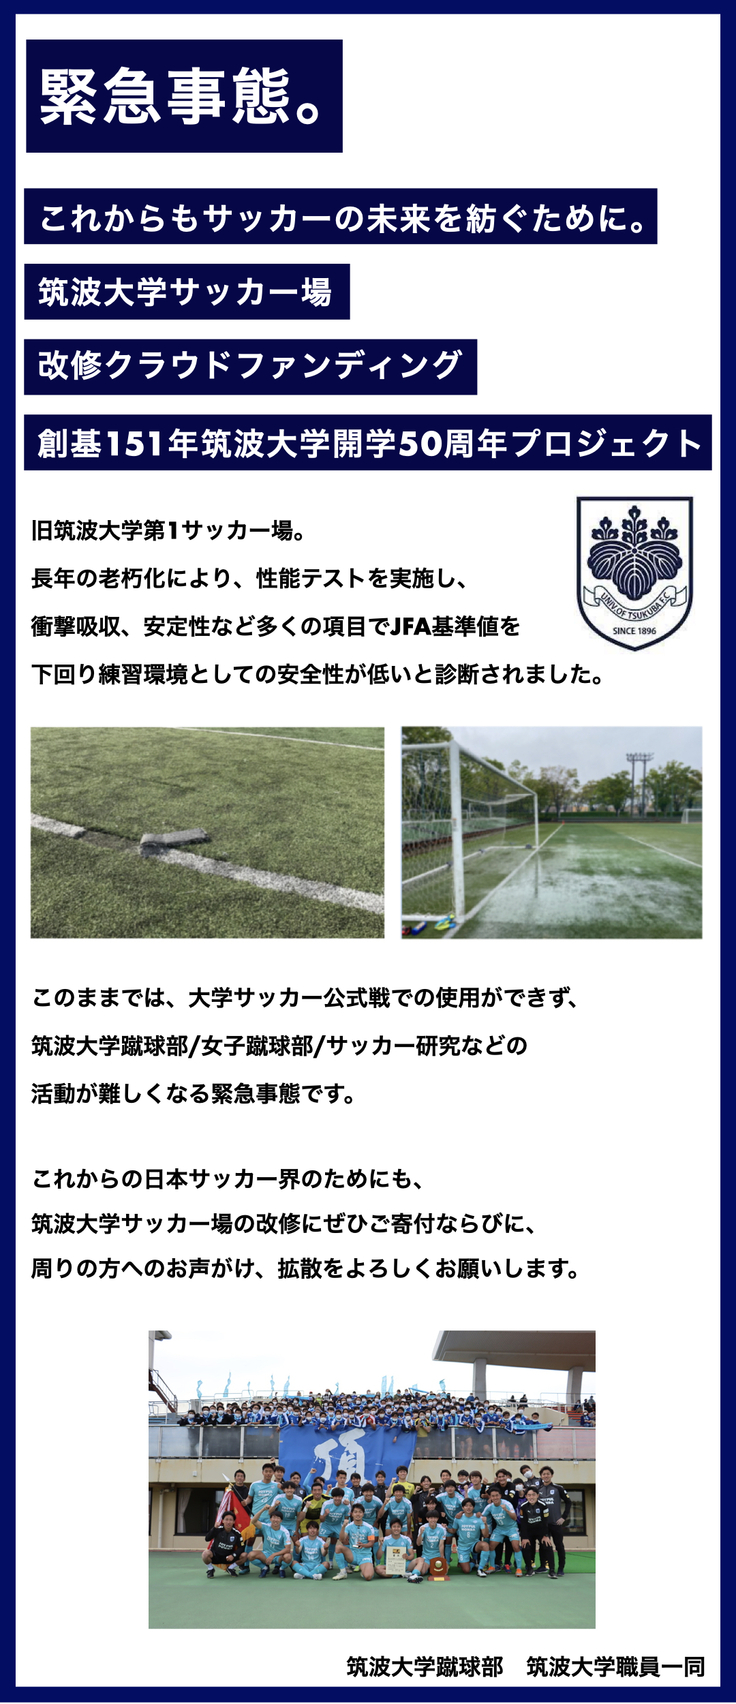 筑波大学サッカー場